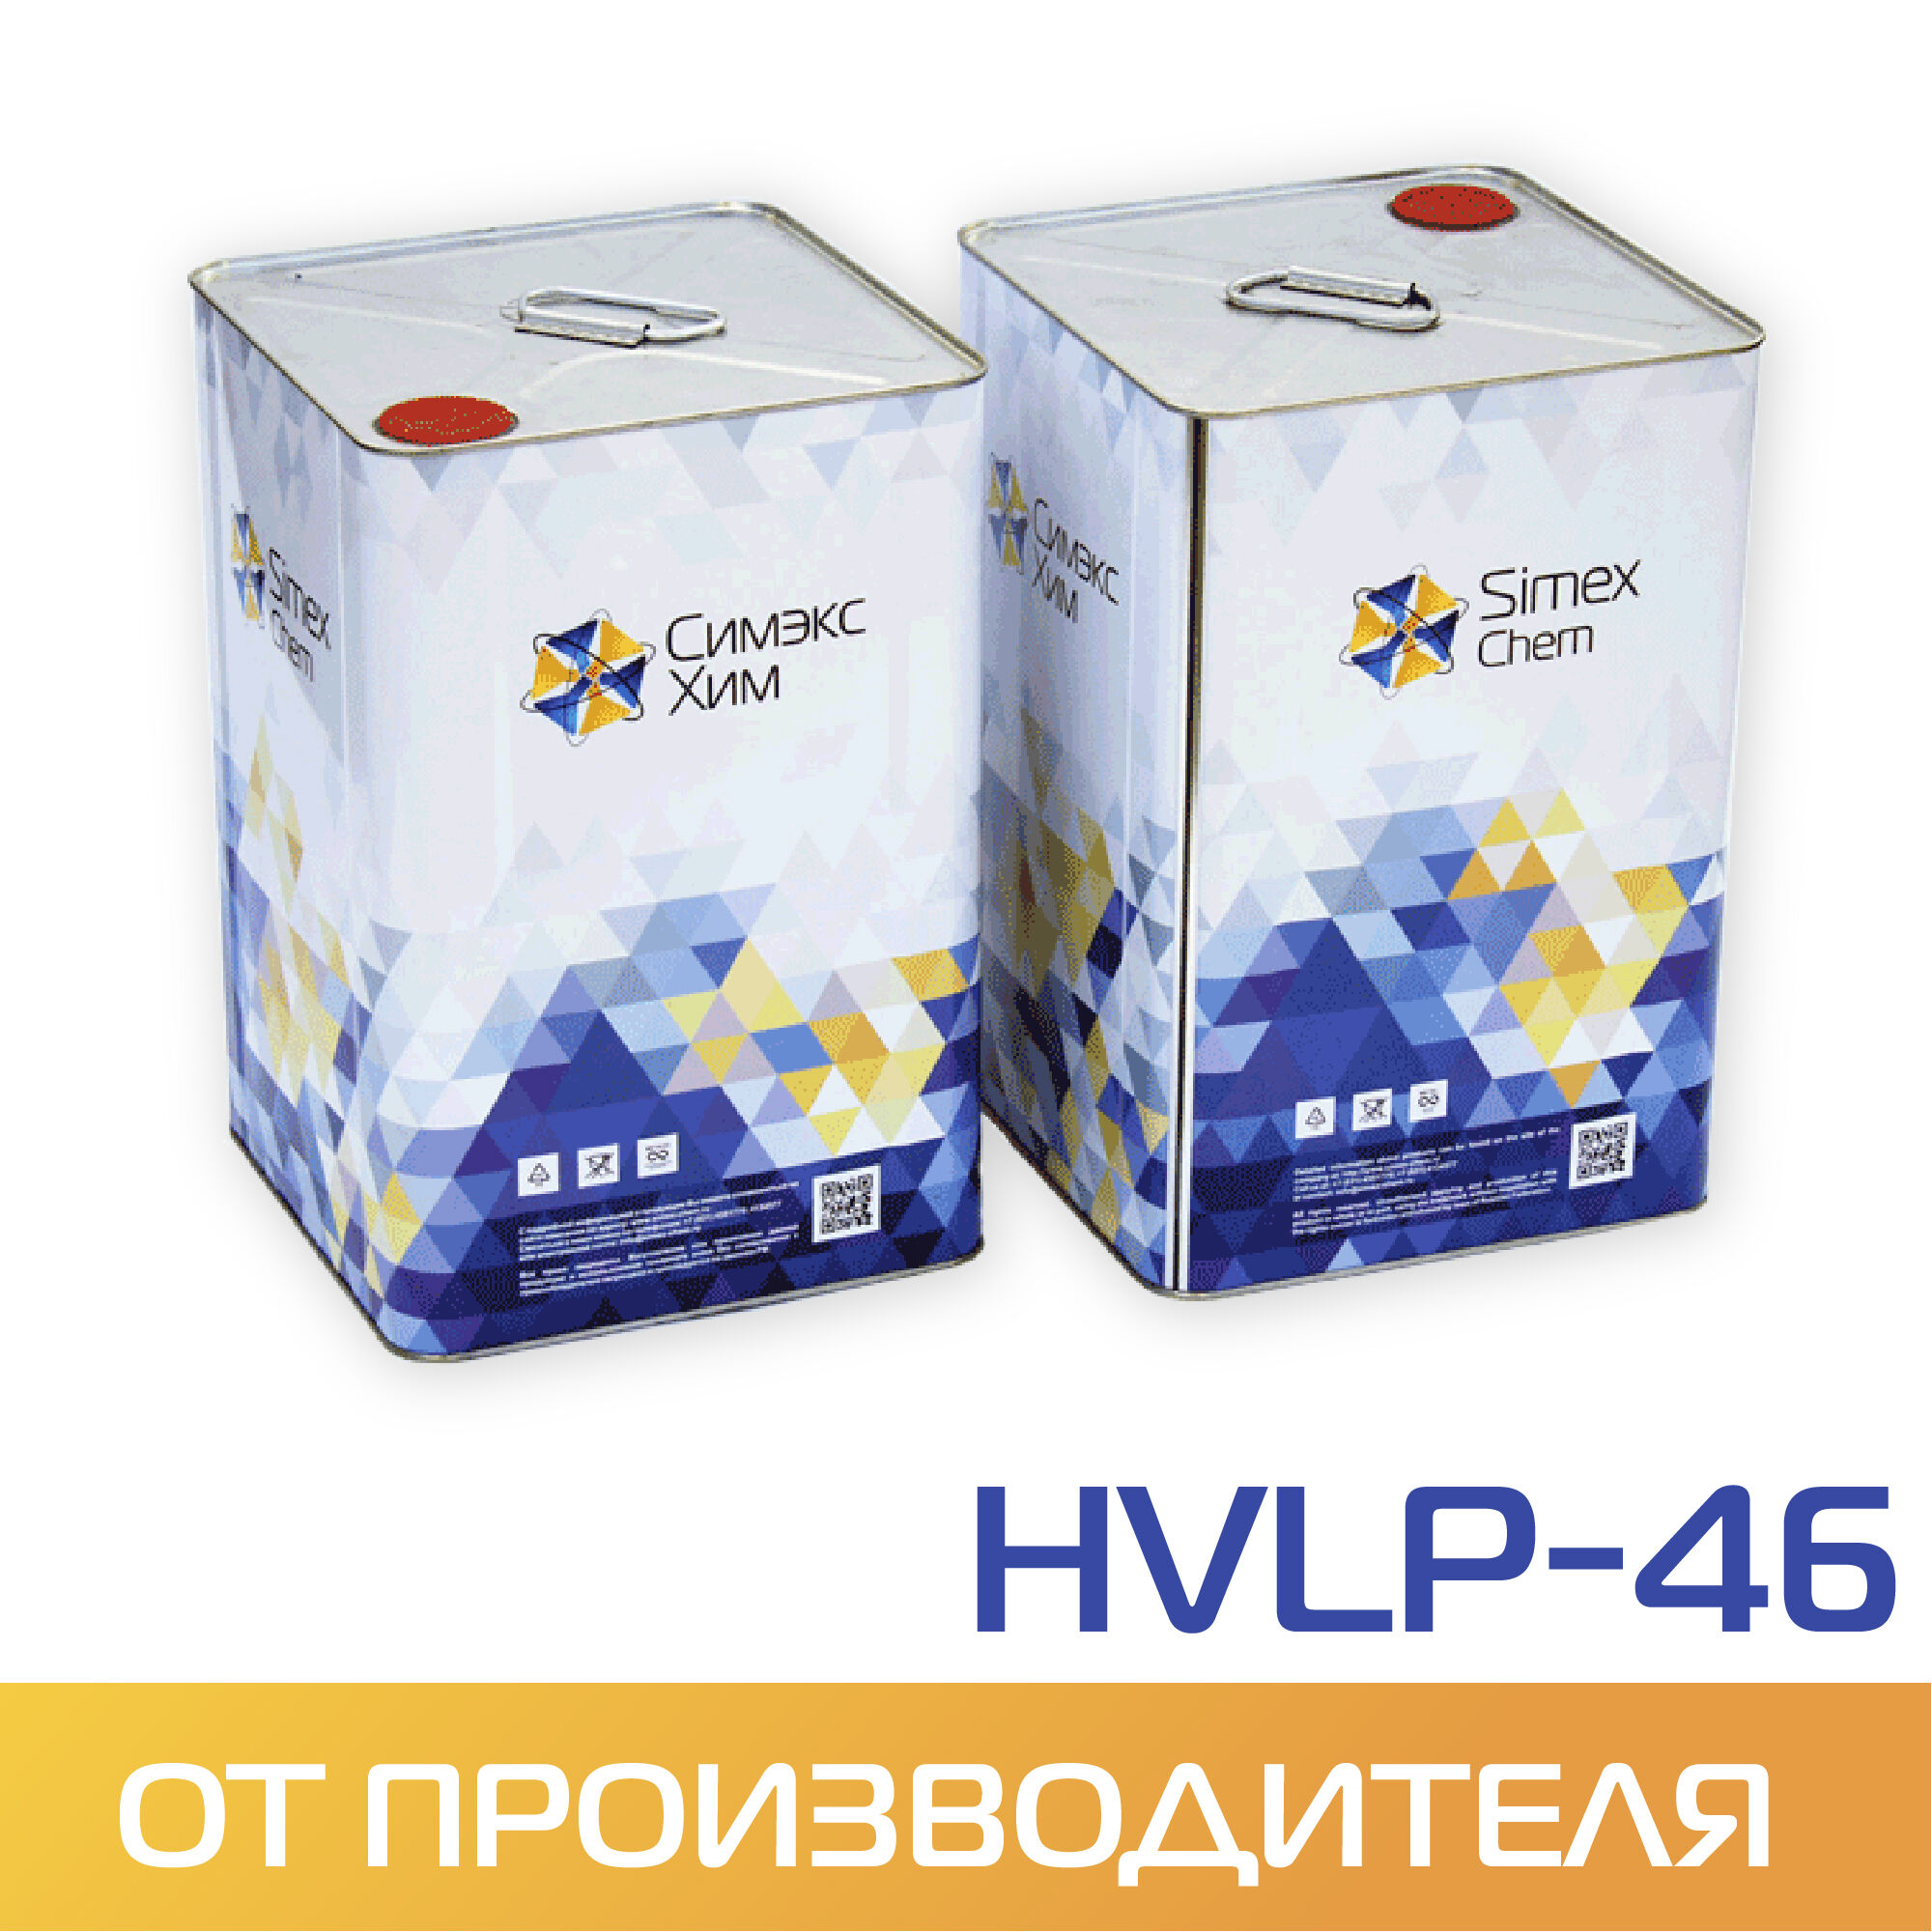 Масло гидравлическое HVLP-46 бидон 15 кг